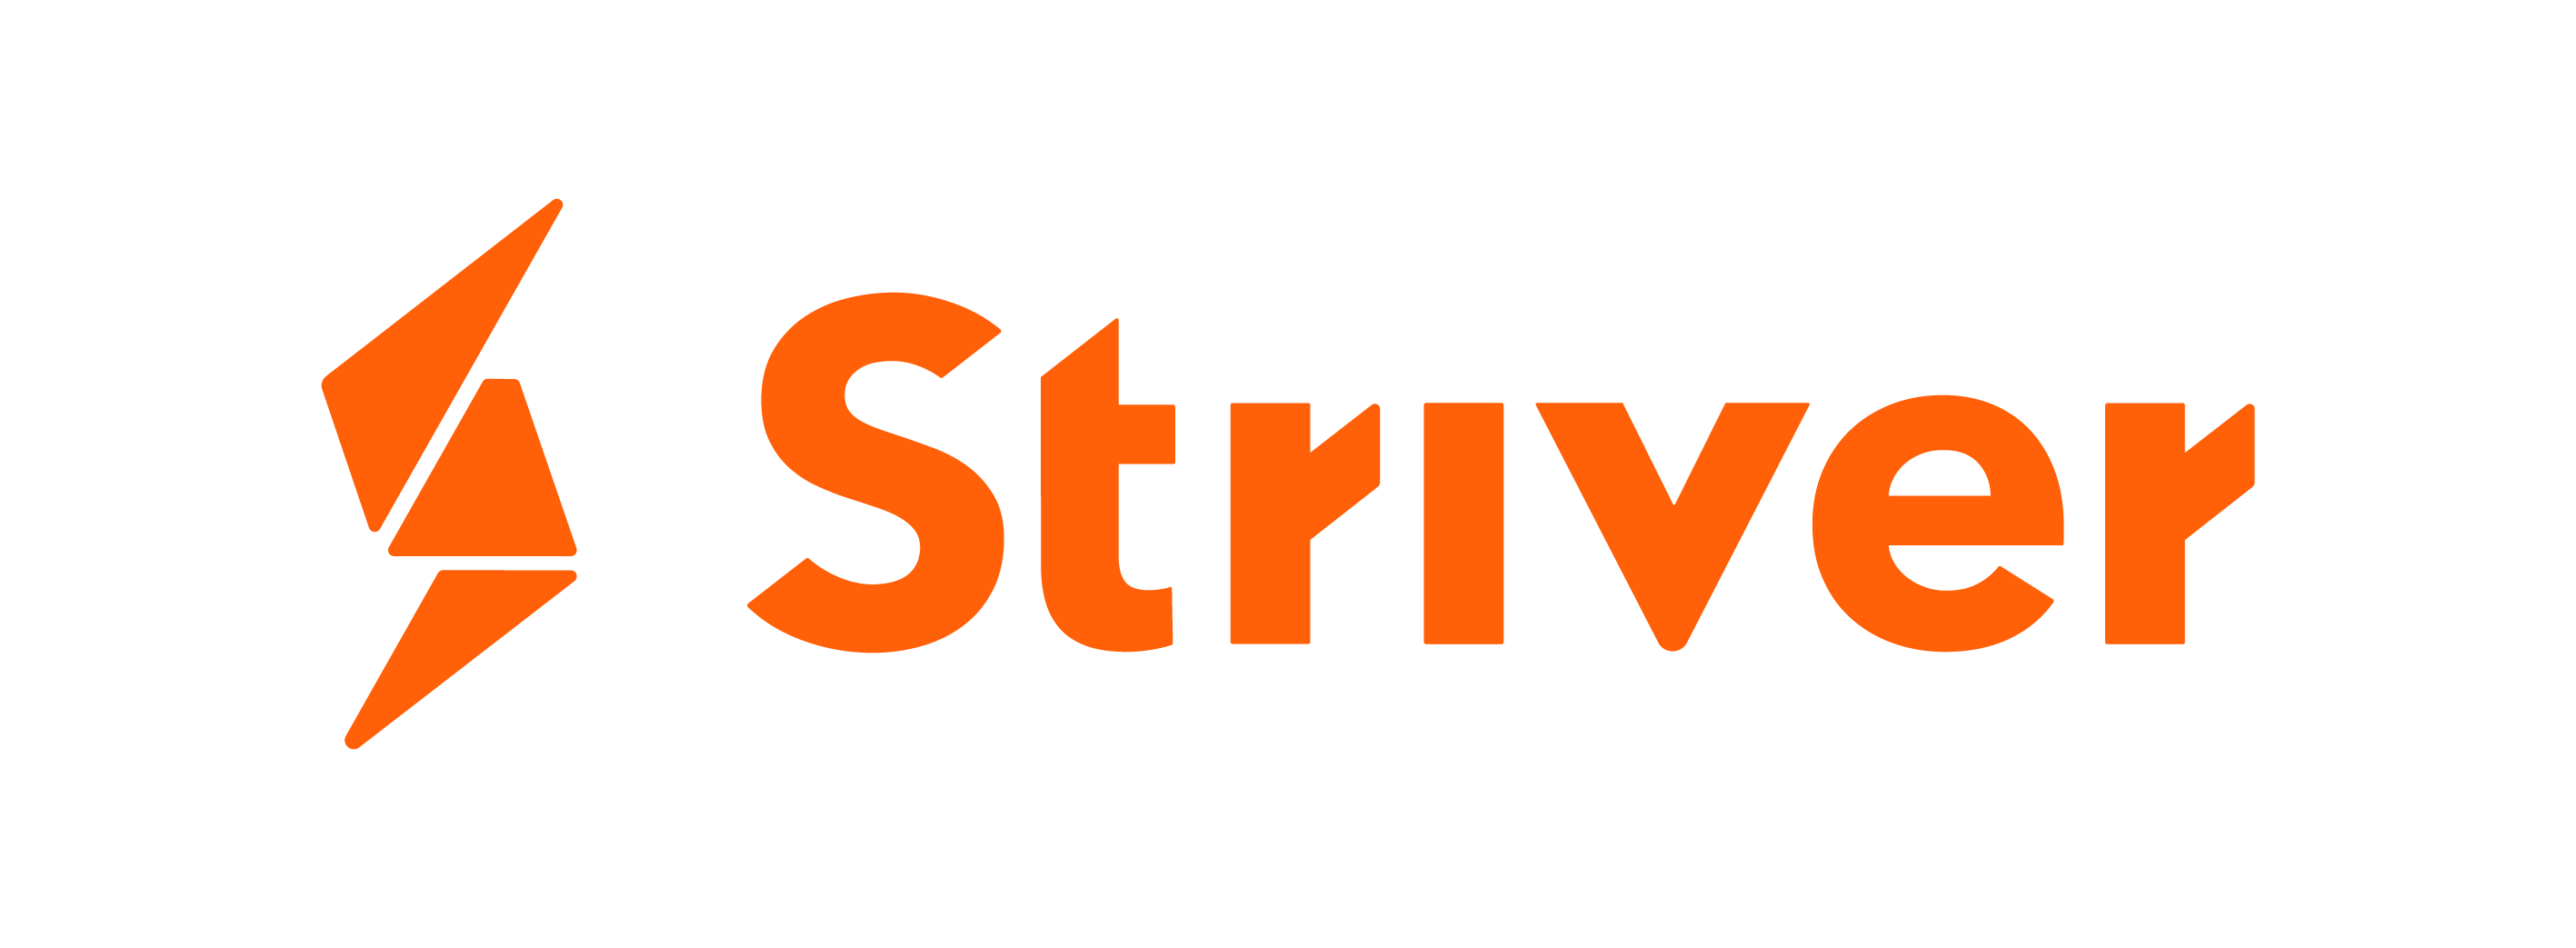 Striver Orange Logo